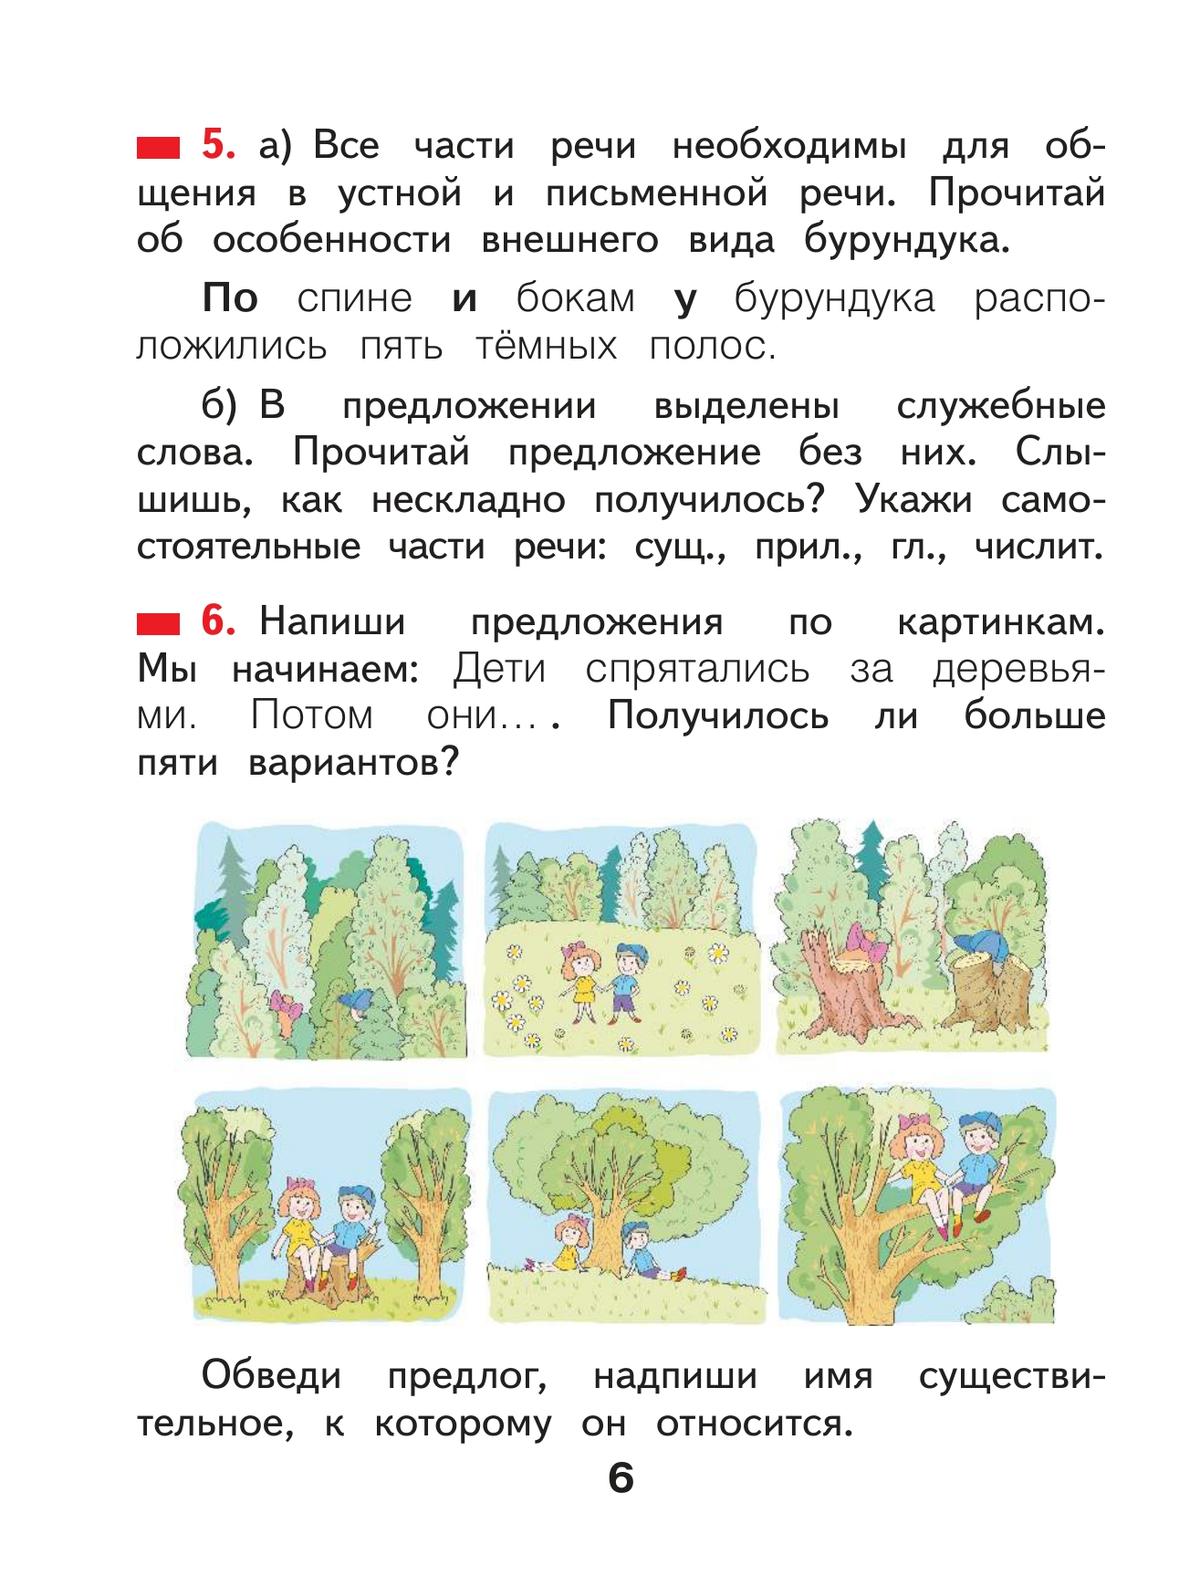 Русский язык. 2 класс. Учебное пособие В 2 ч. Часть 2 6